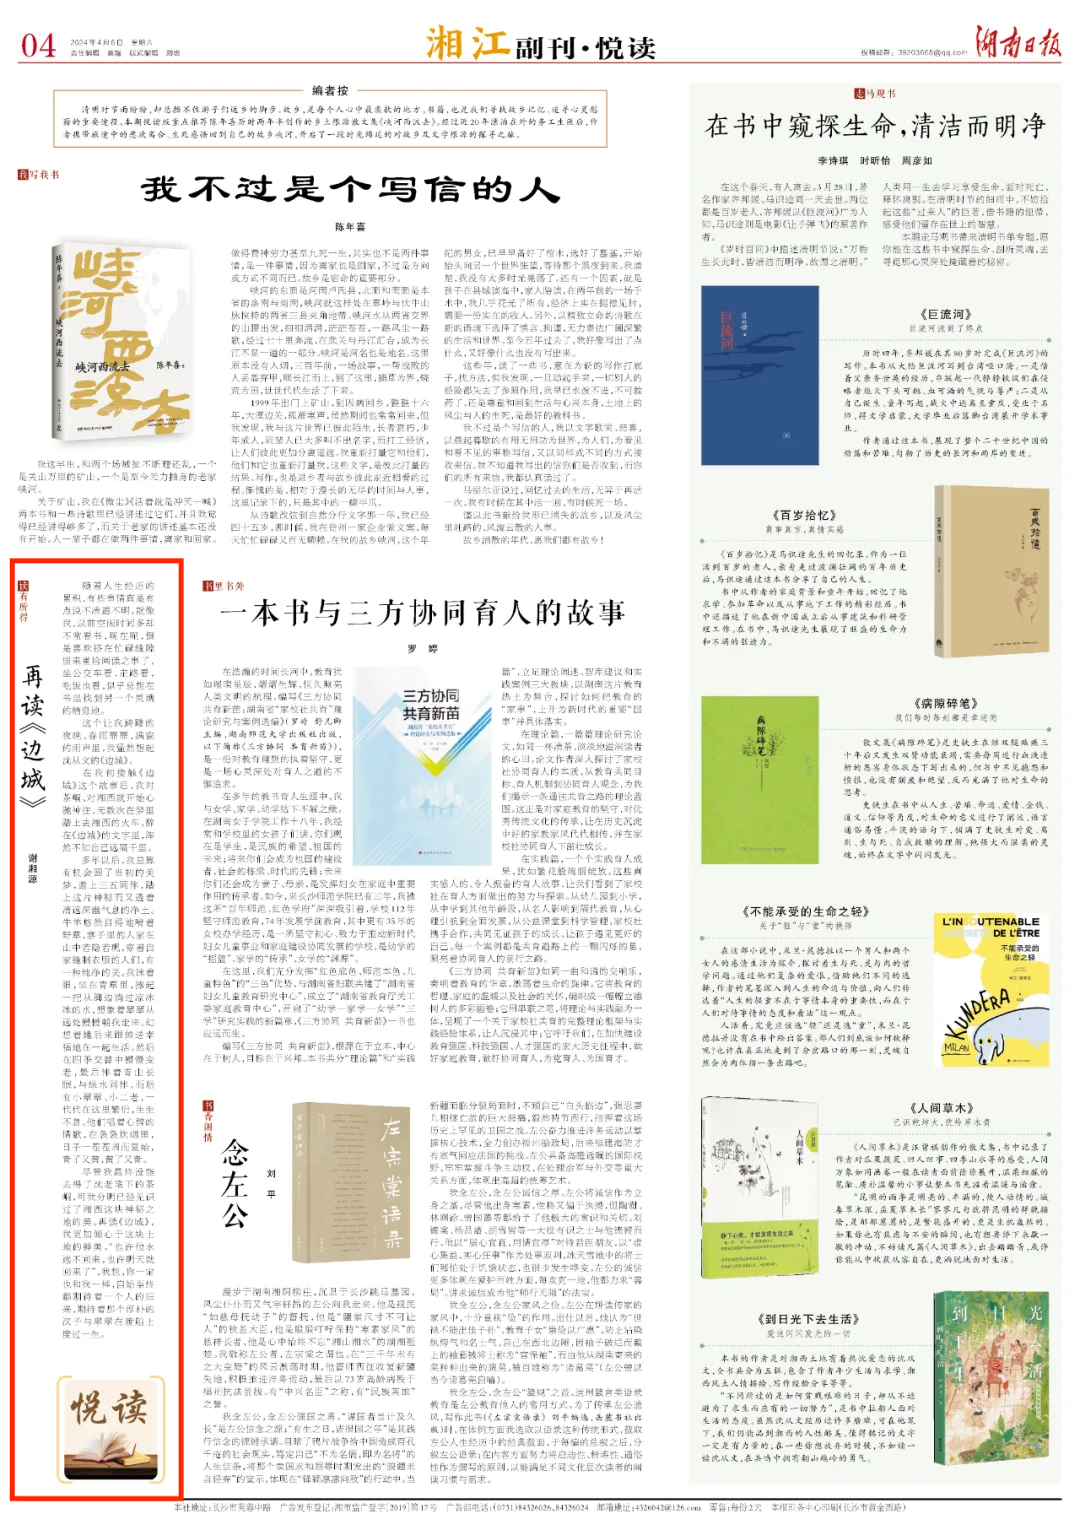 湘江副刊·悦读丨再读《边城》